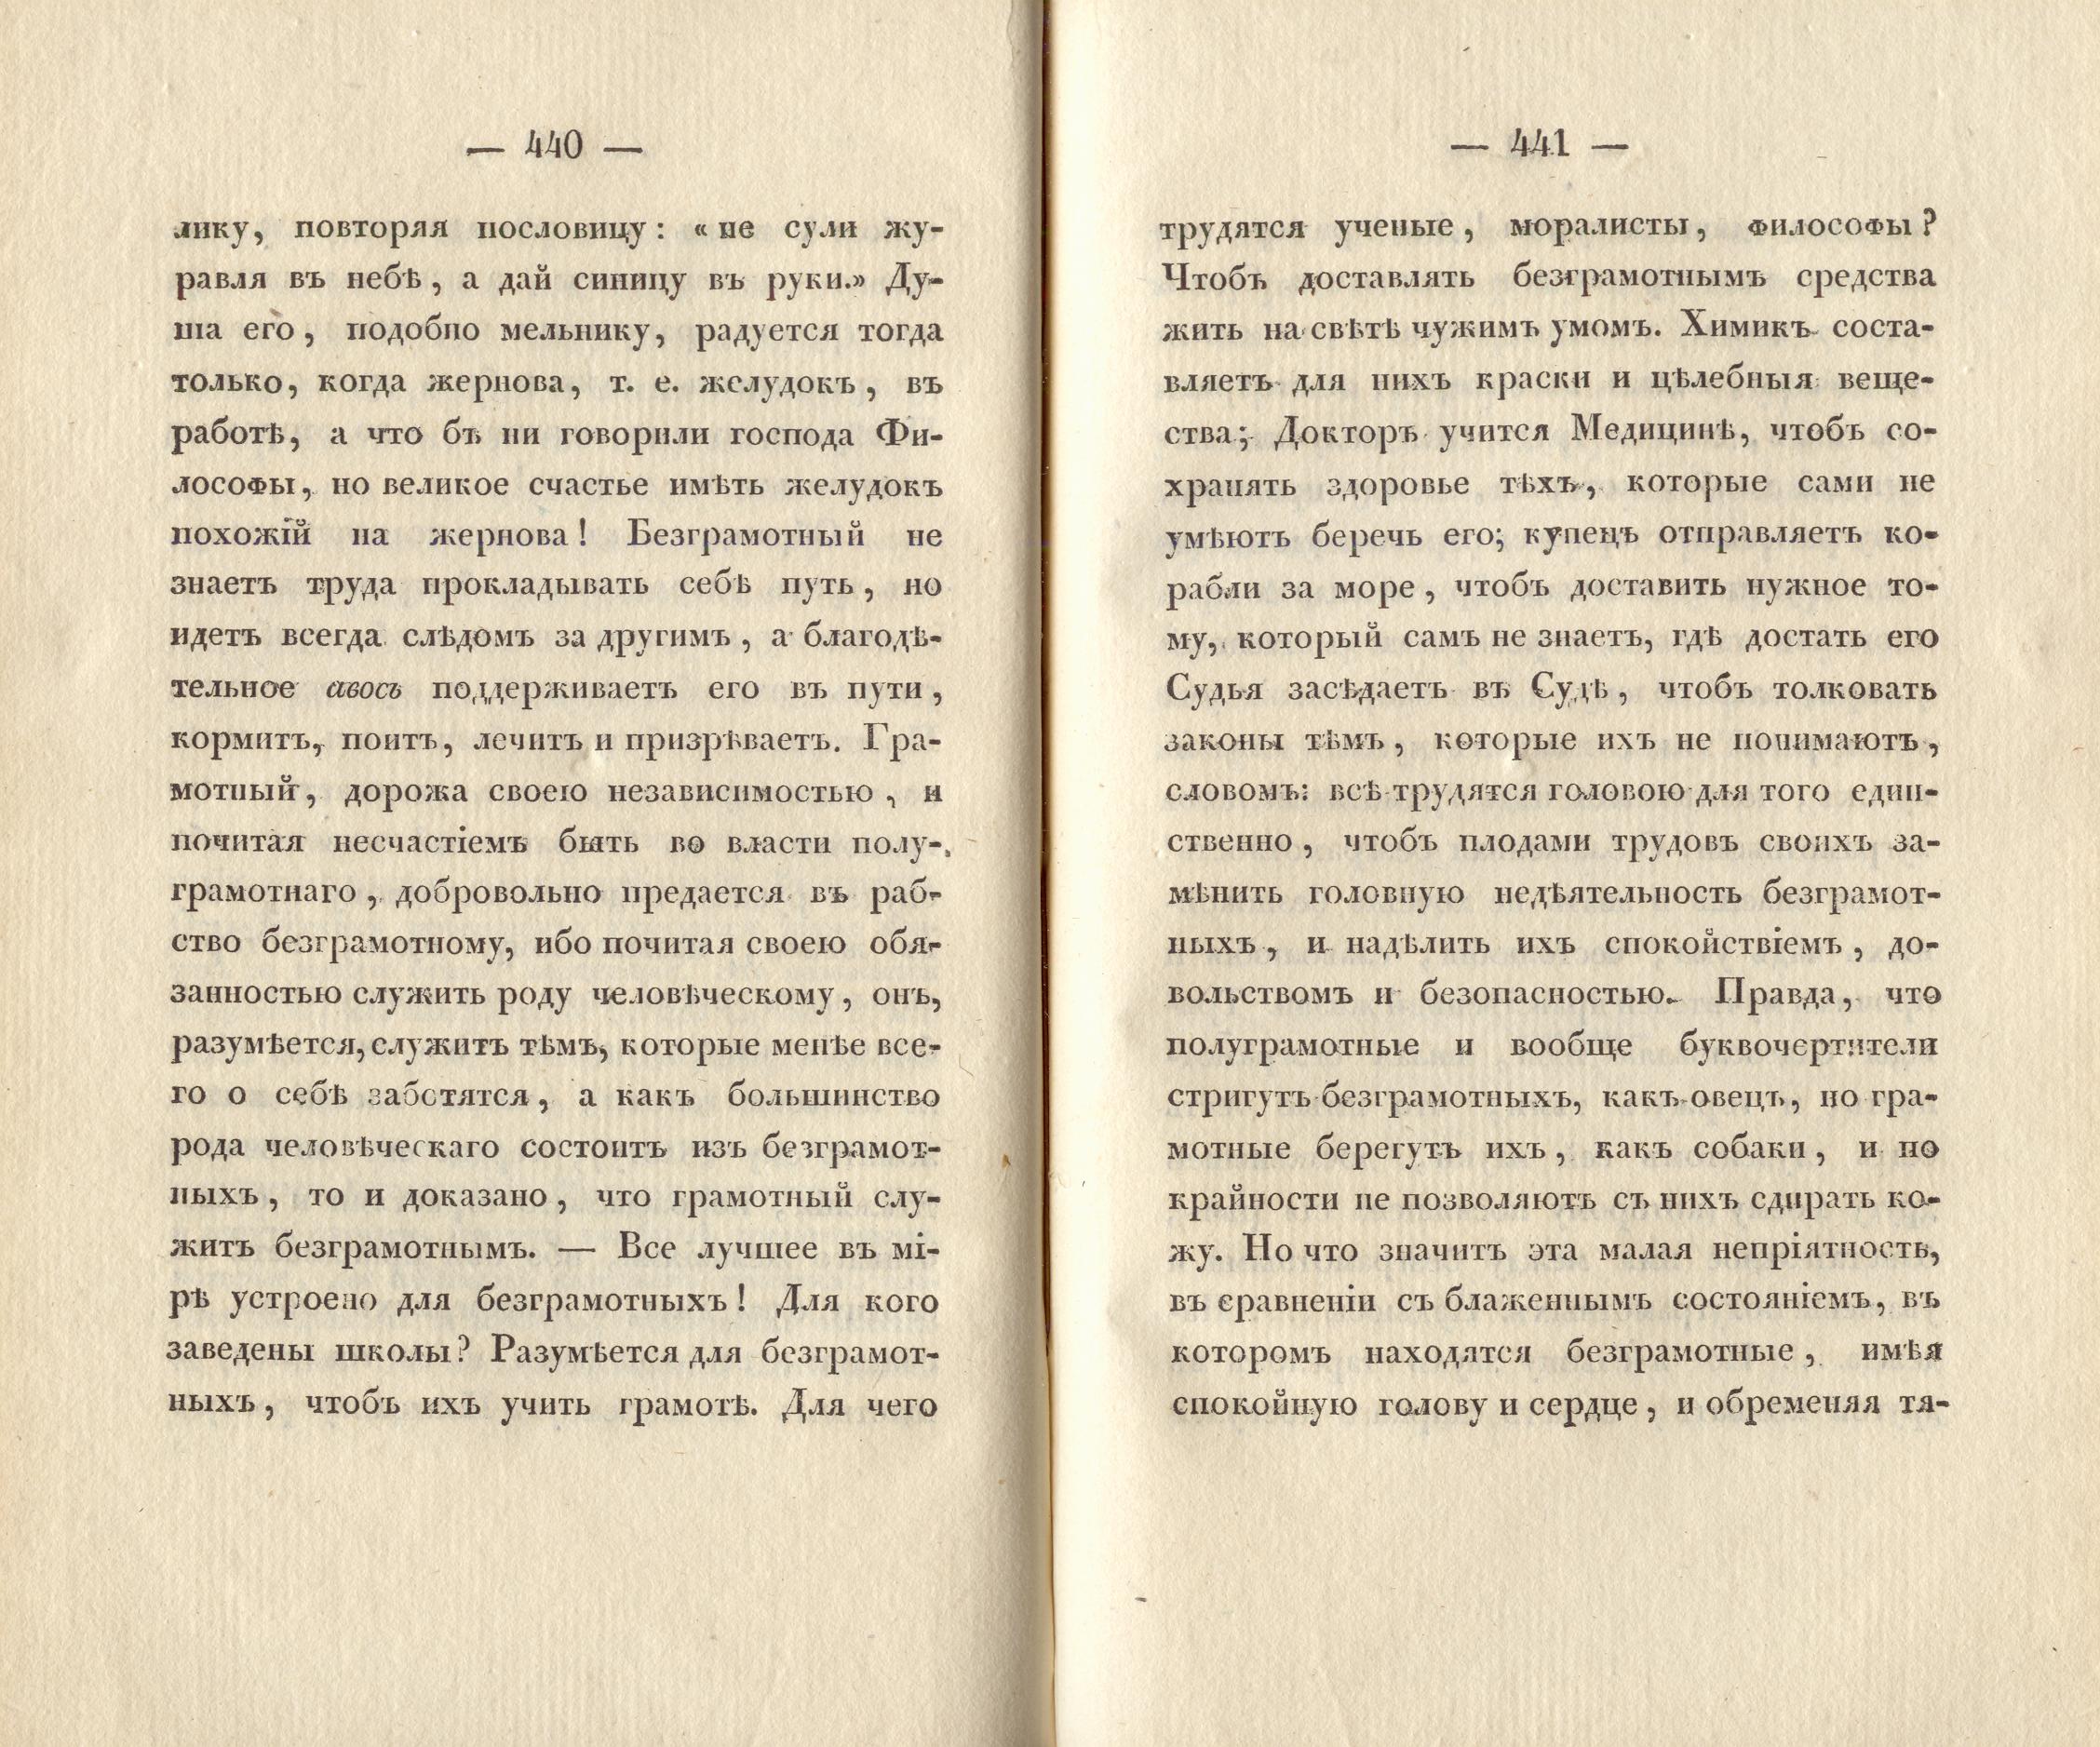 Сочиненія [2] (1836) | 223. (440-441) Main body of text